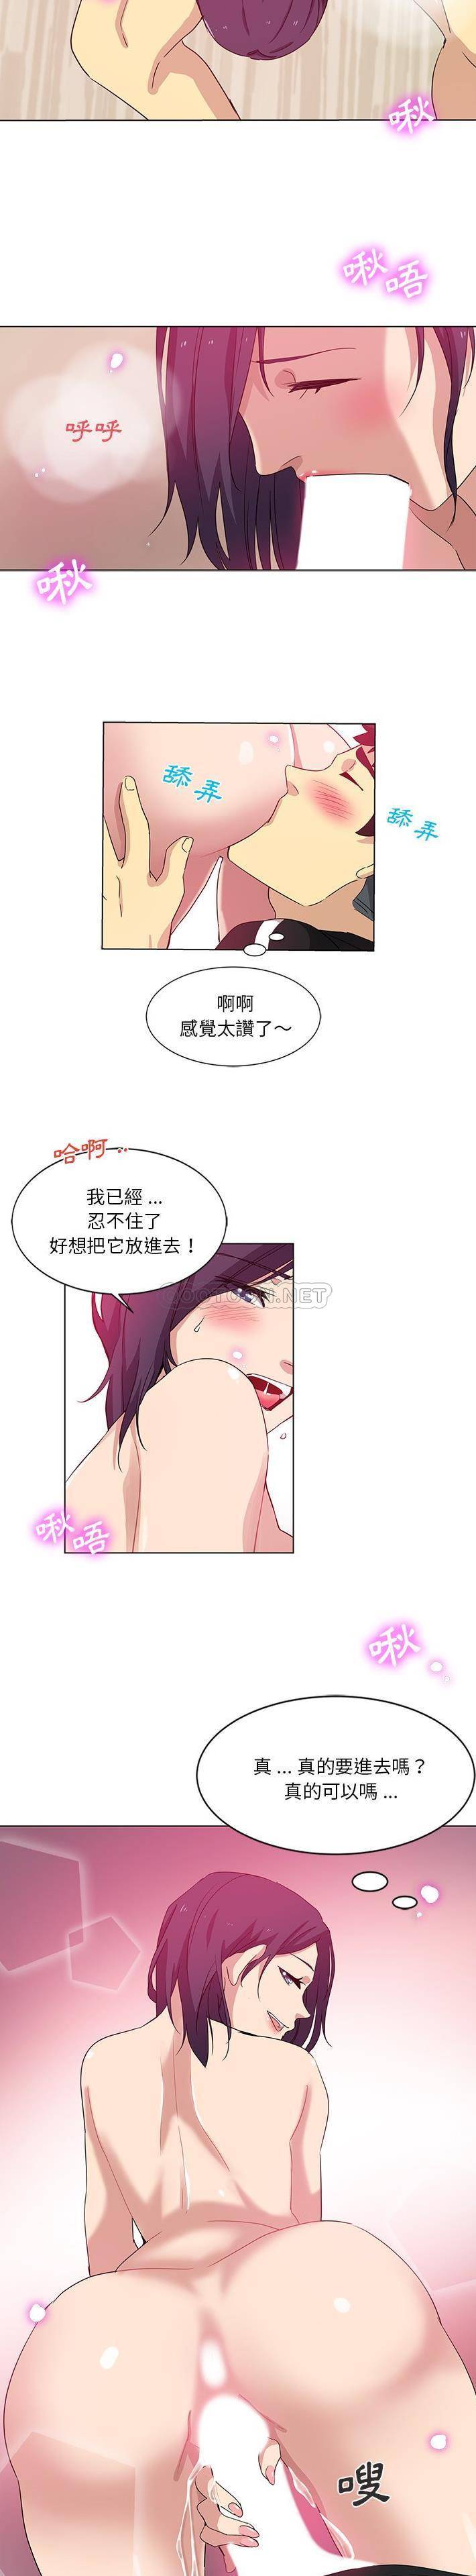 韩国污漫画 危險純友誼 第3话 5